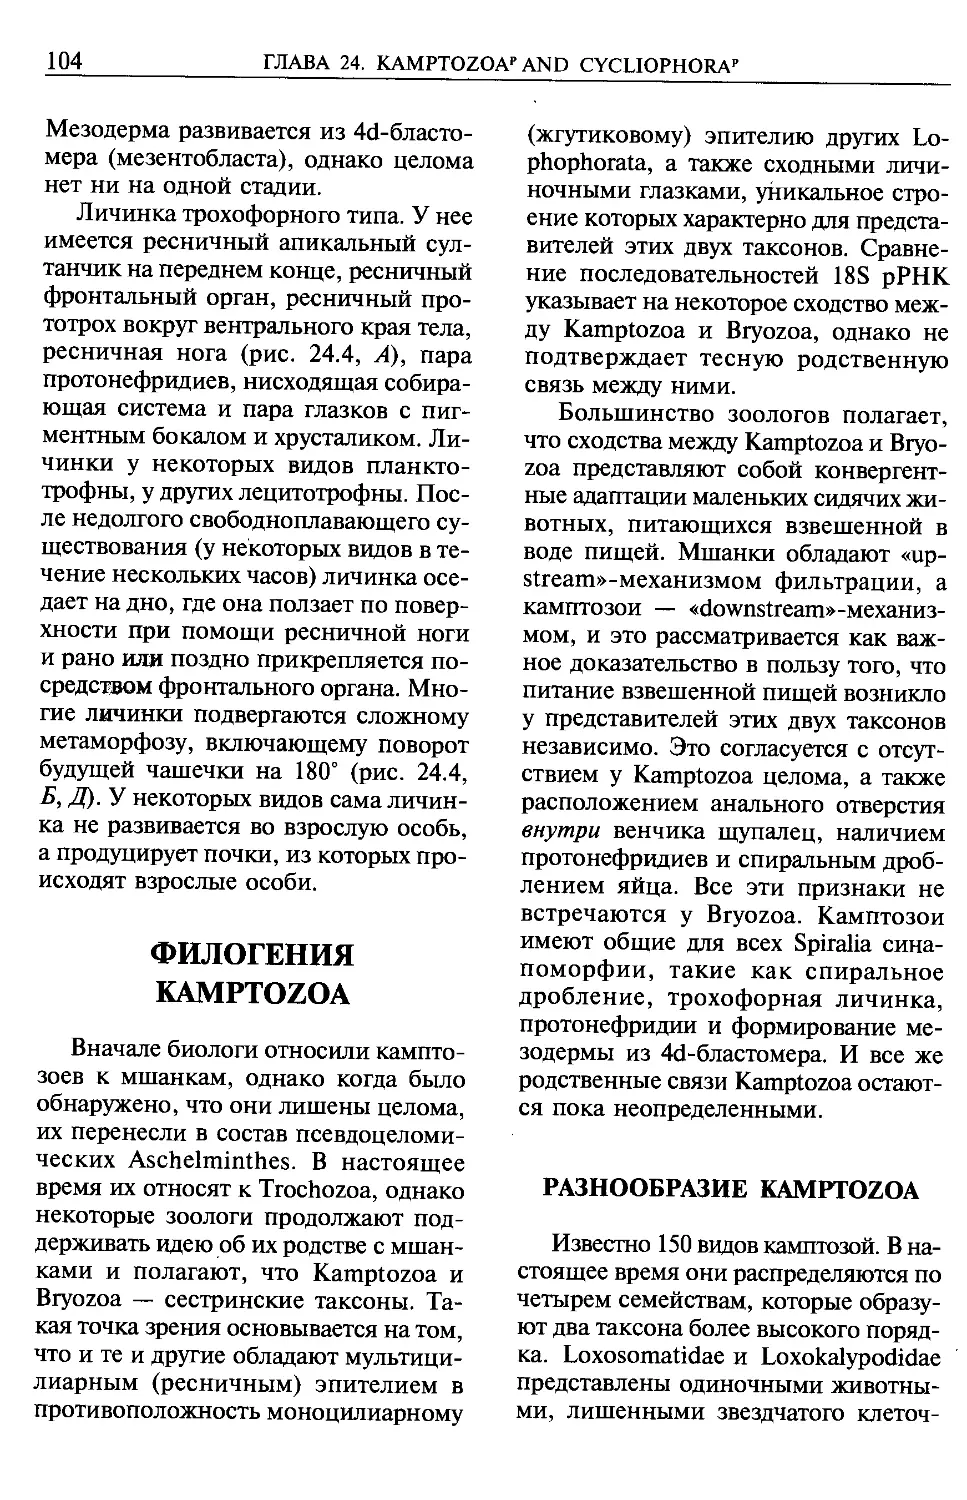 Филогения Kamptozoa.